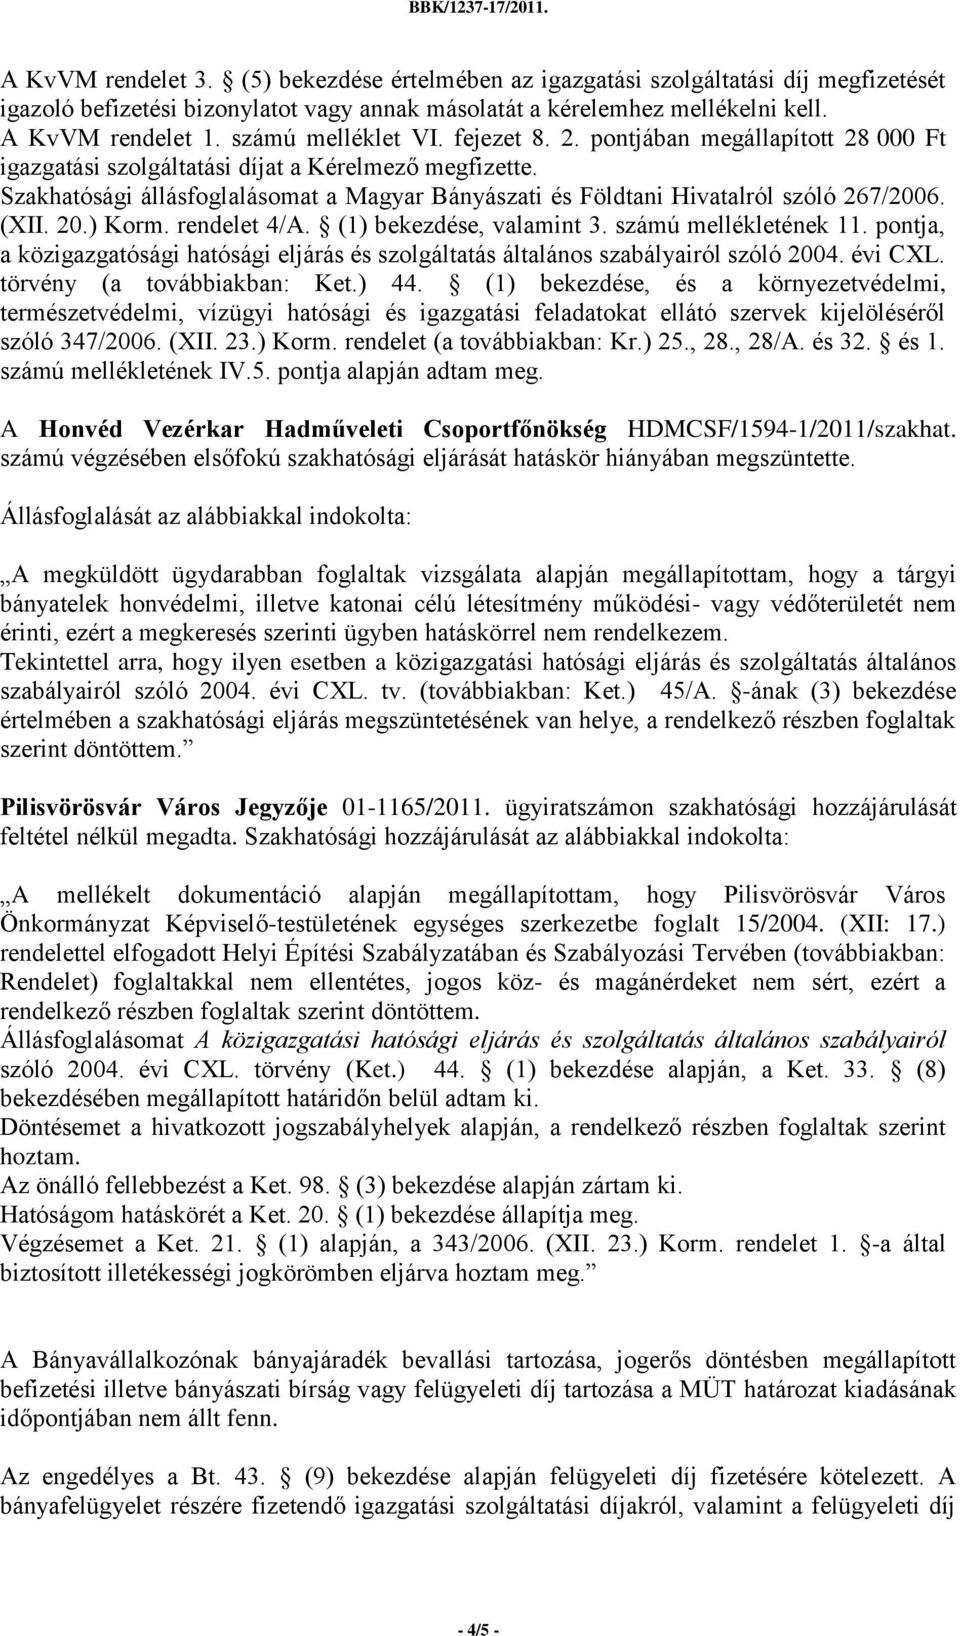 Szakhatósági állásfoglalásomat a Magyar Bányászati és Földtani Hivatalról szóló 267/2006. (XII. 20.) Korm. rendelet 4/A. (1) bekezdése, valamint 3. számú mellékletének 11.